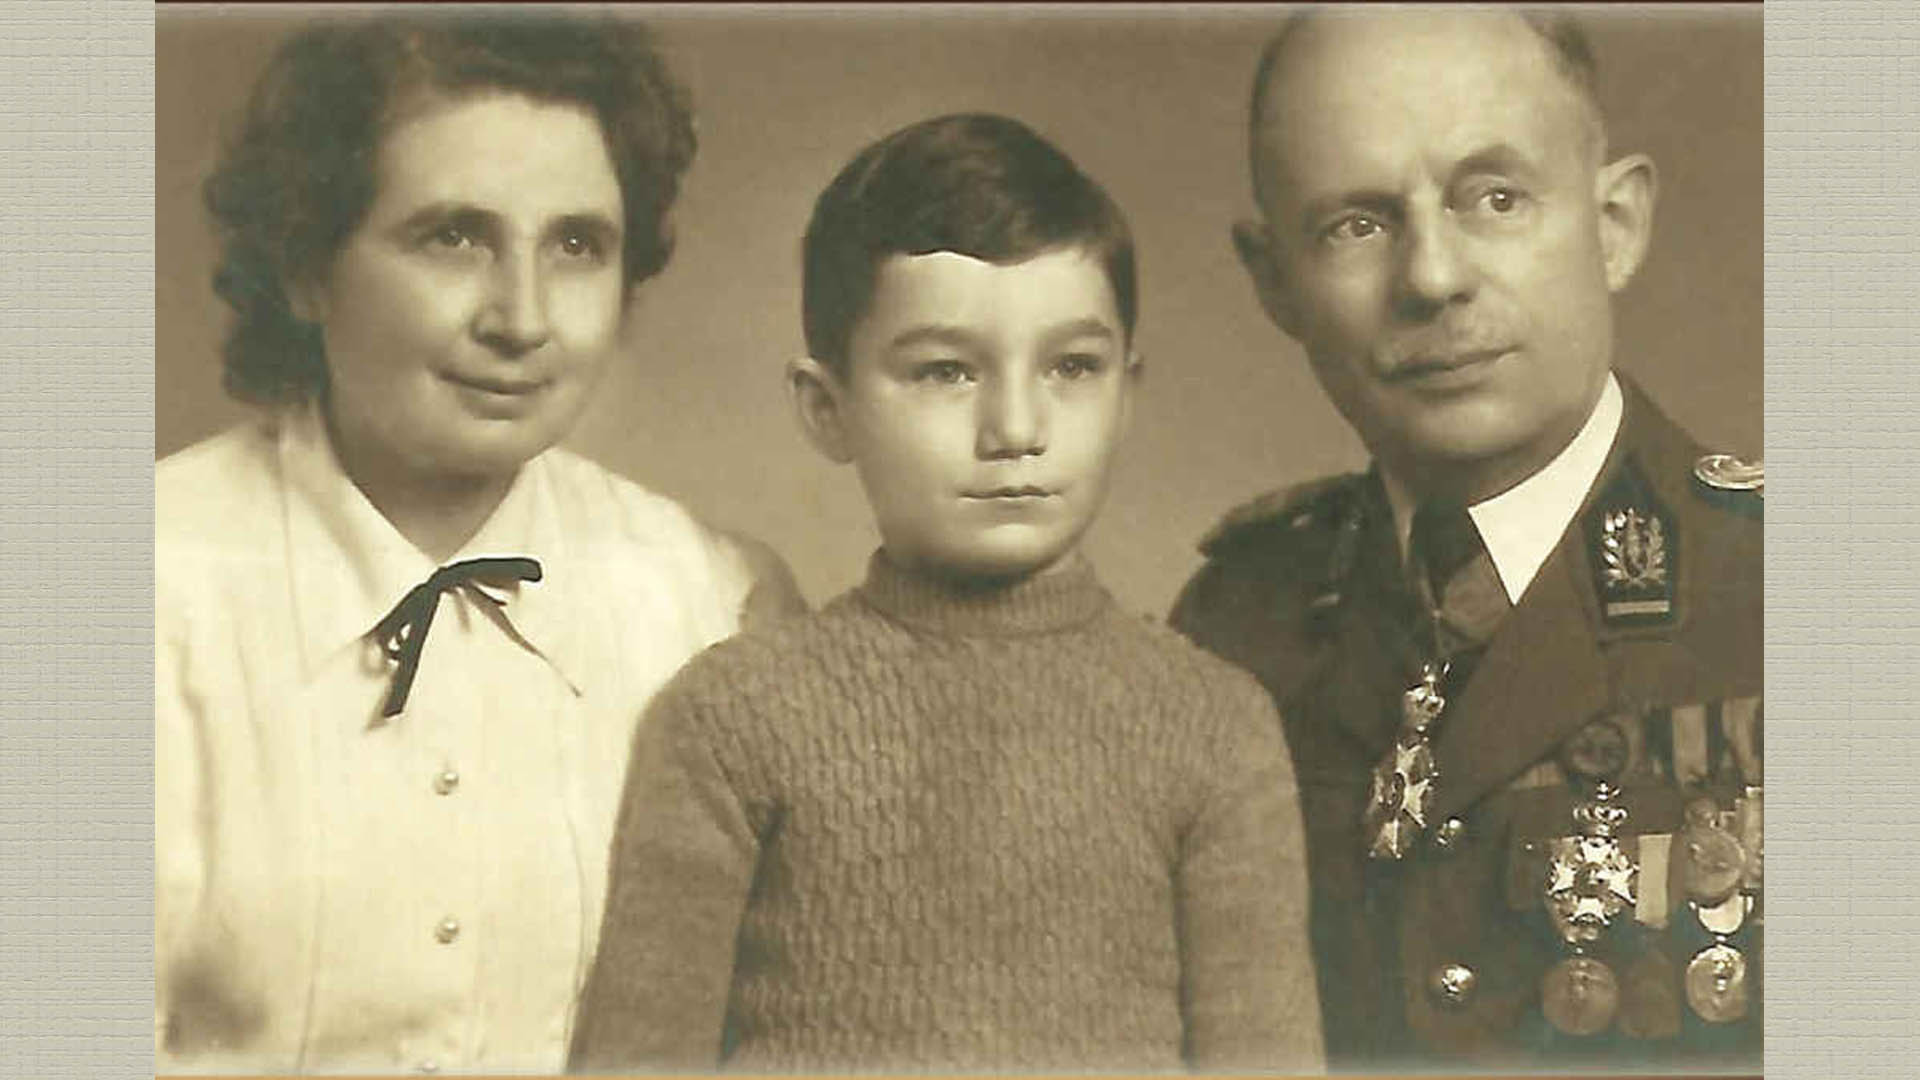 Superviviente del Holocausto | Zvi Szlamowicz: el niño judío al que los nazis arrebataron su infancia junto a su familia